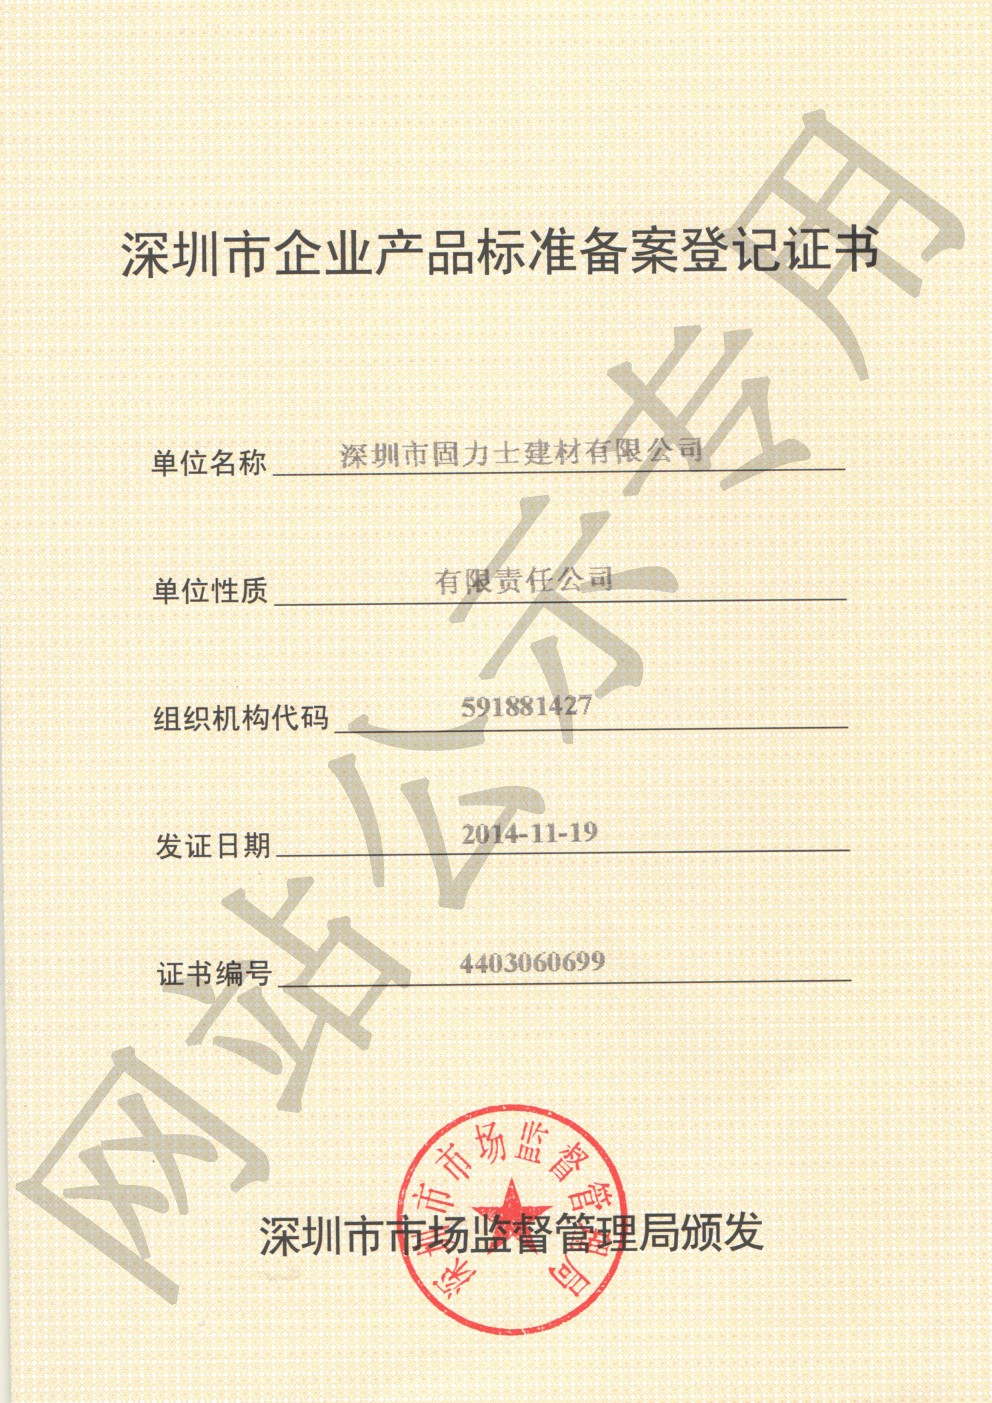 七里河企业产品标准登记证书